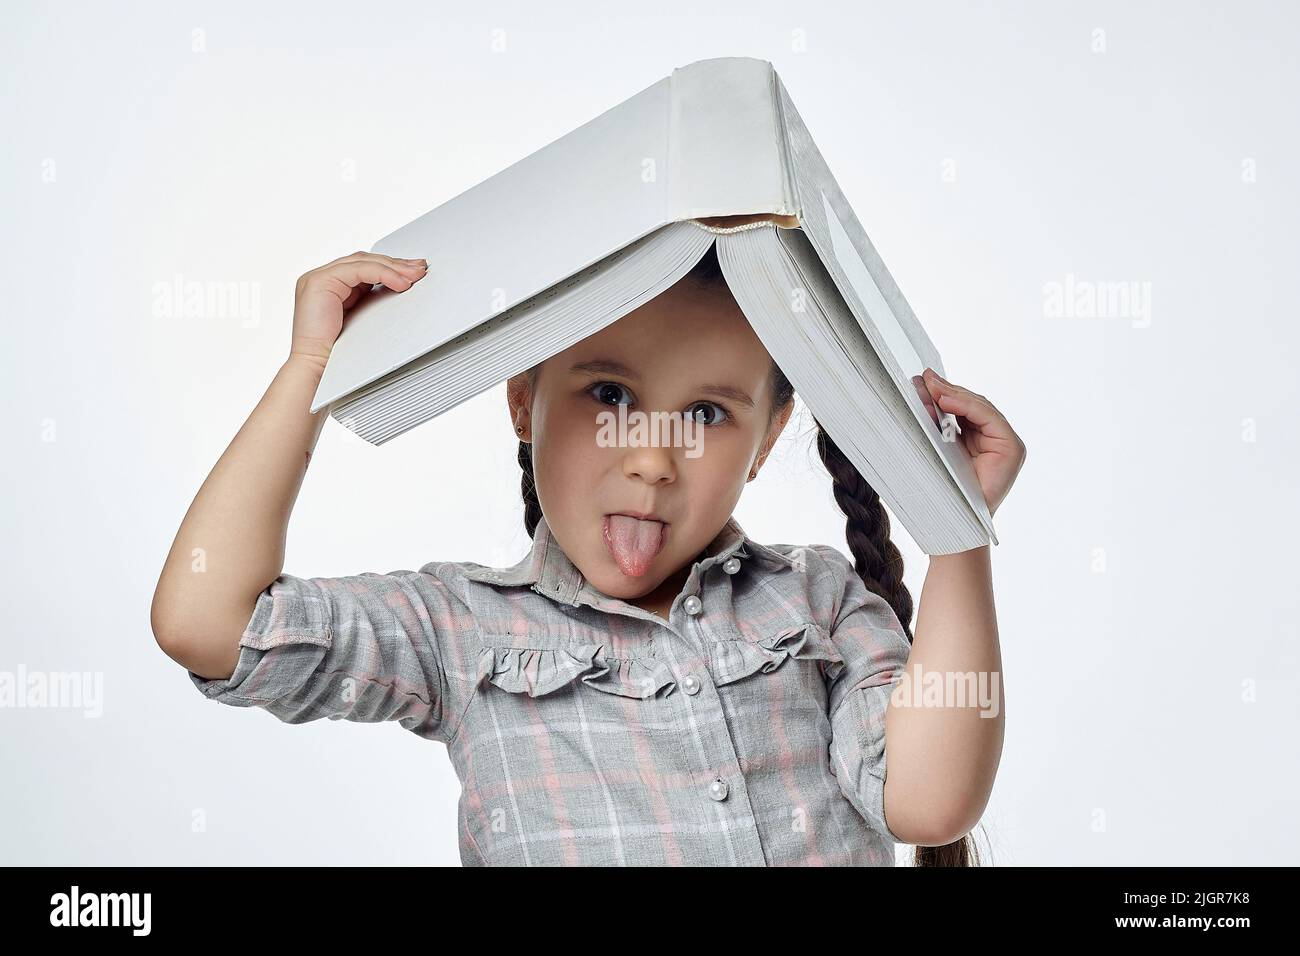 petite fille souriante avec des picots tressés tient un grand livre au-dessus de sa tête et montre sa langue. Banque D'Images